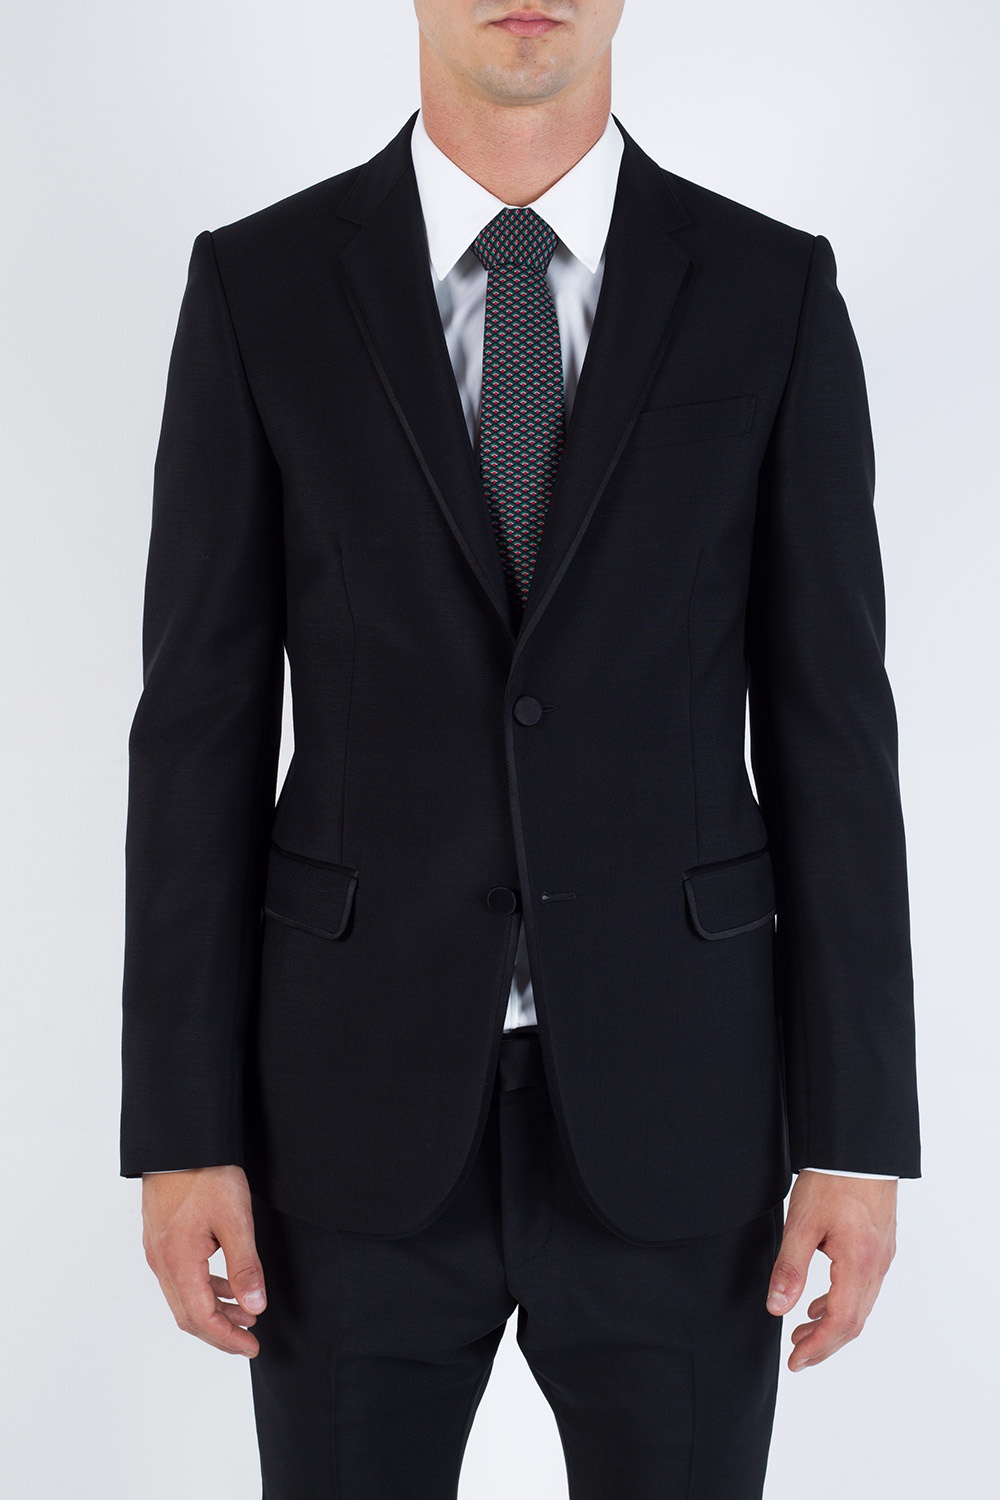 Mohair suit Gucci - Vitkac